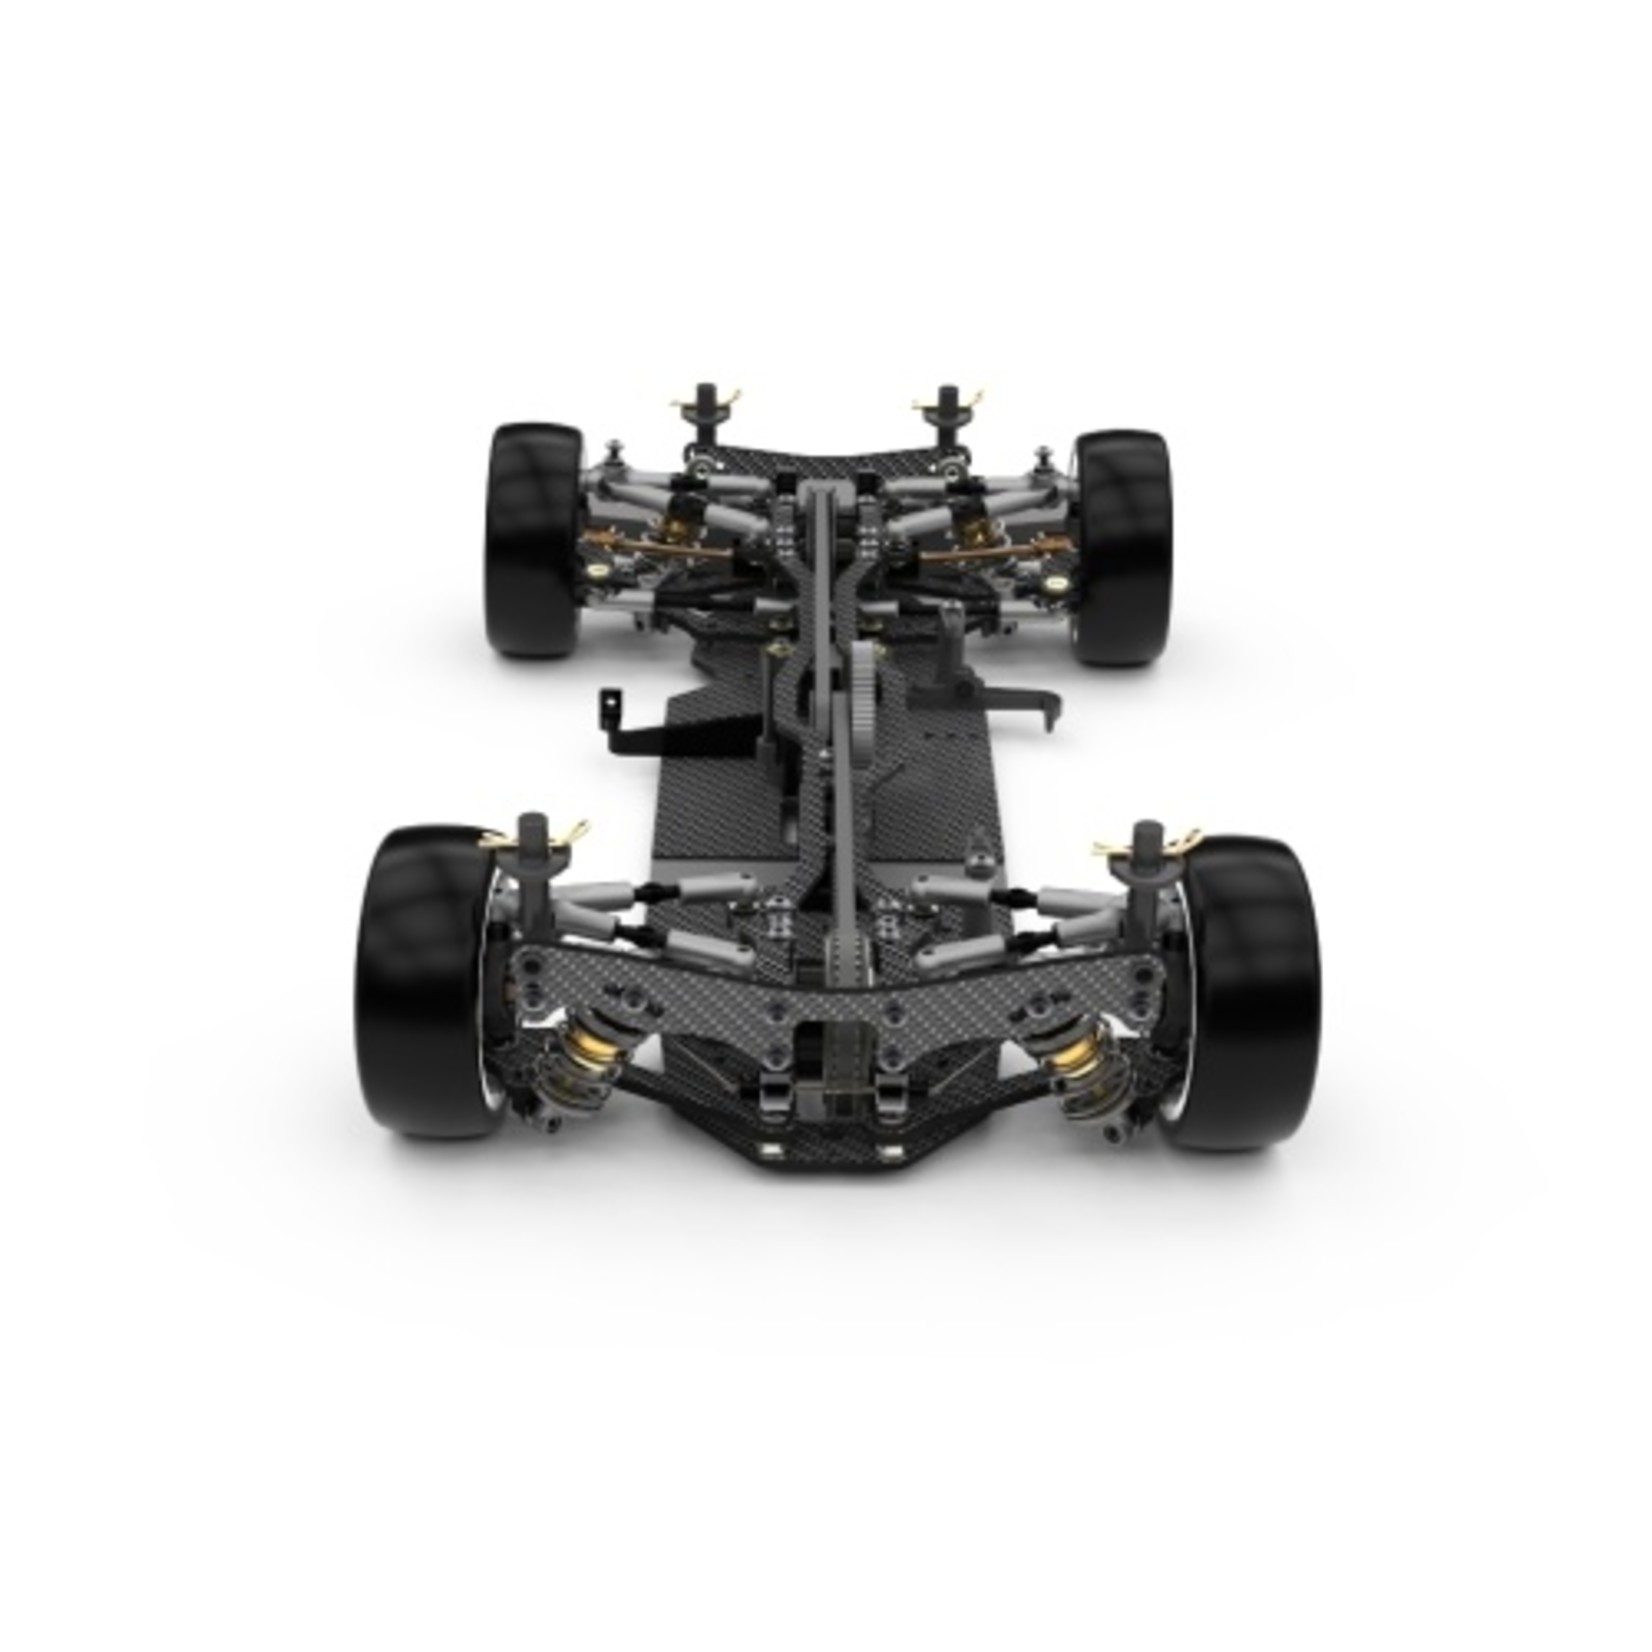 Schumacher Schumacher K195 Mi8 Carbon Fiber Kit